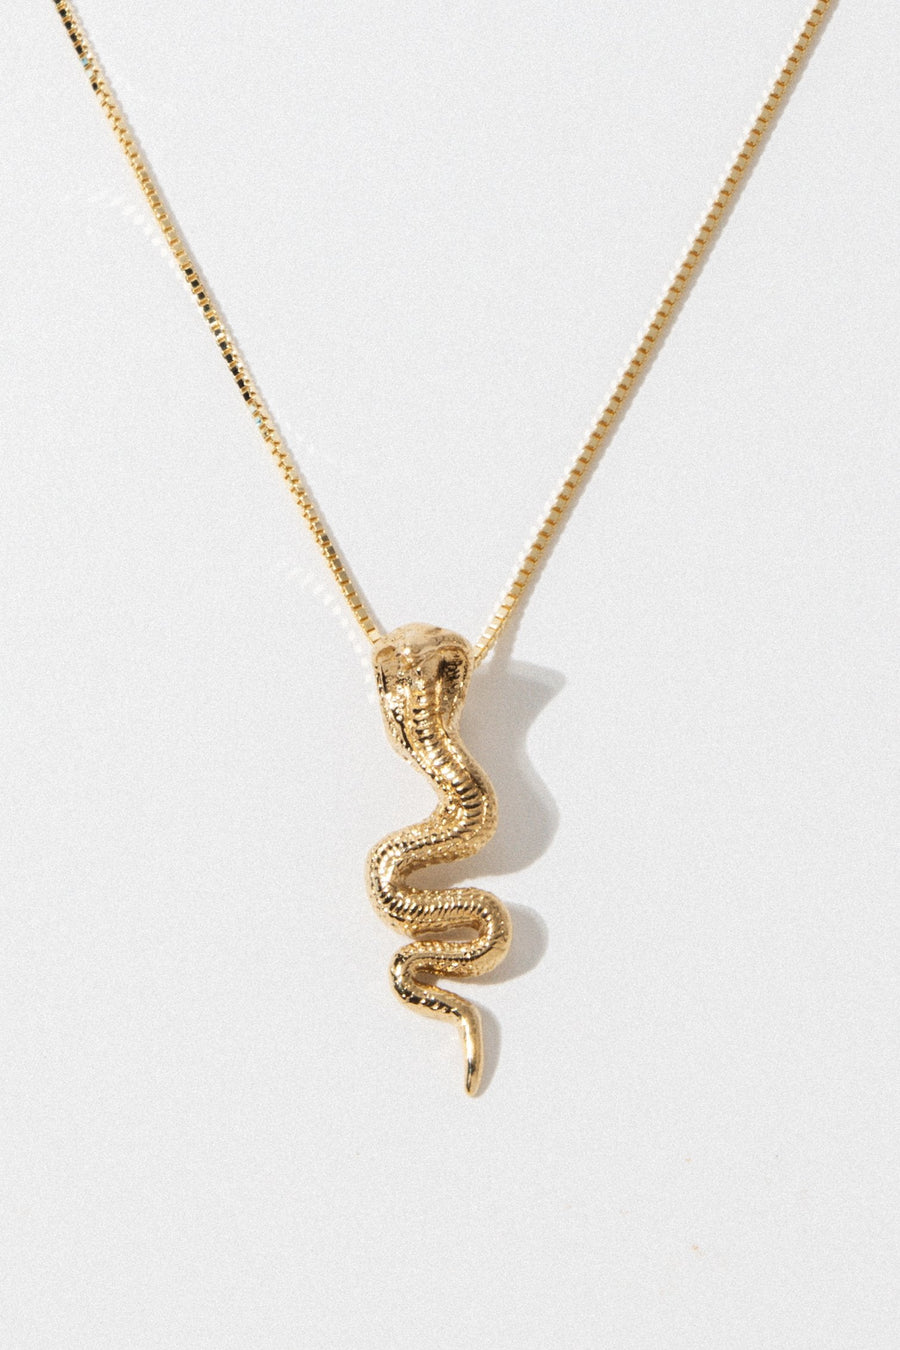 Dona Italia Jewelry Gold / 14 Inches Gold Cobra Necklace